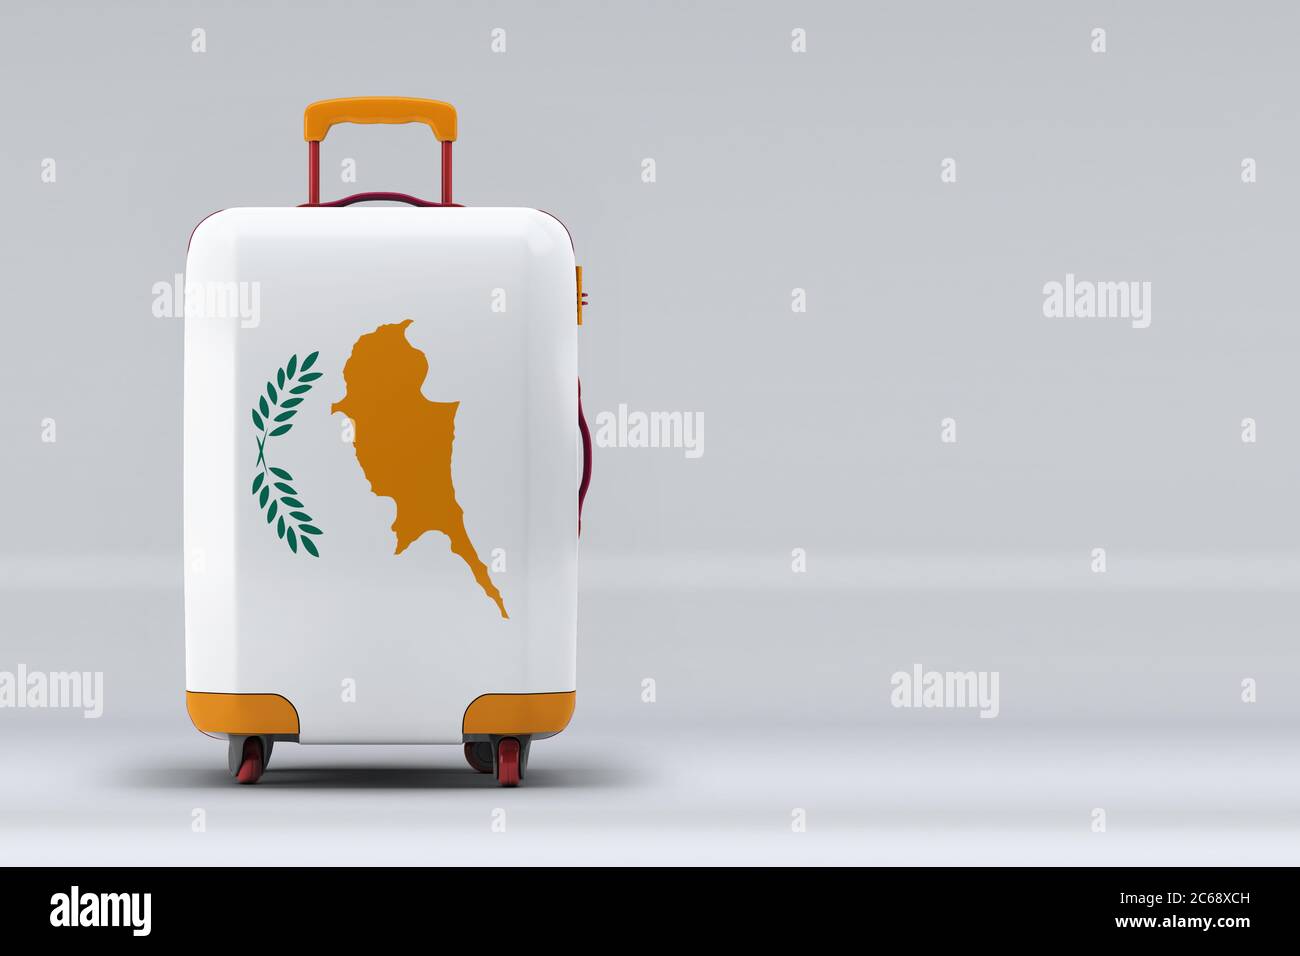 Zypern Nationalflagge auf einem stilvollen Koffer auf farbigem Hintergrund. Leerzeichen für Text. Internationales Reise- und Tourismuskonzept. 3D-Rendering. Stockfoto